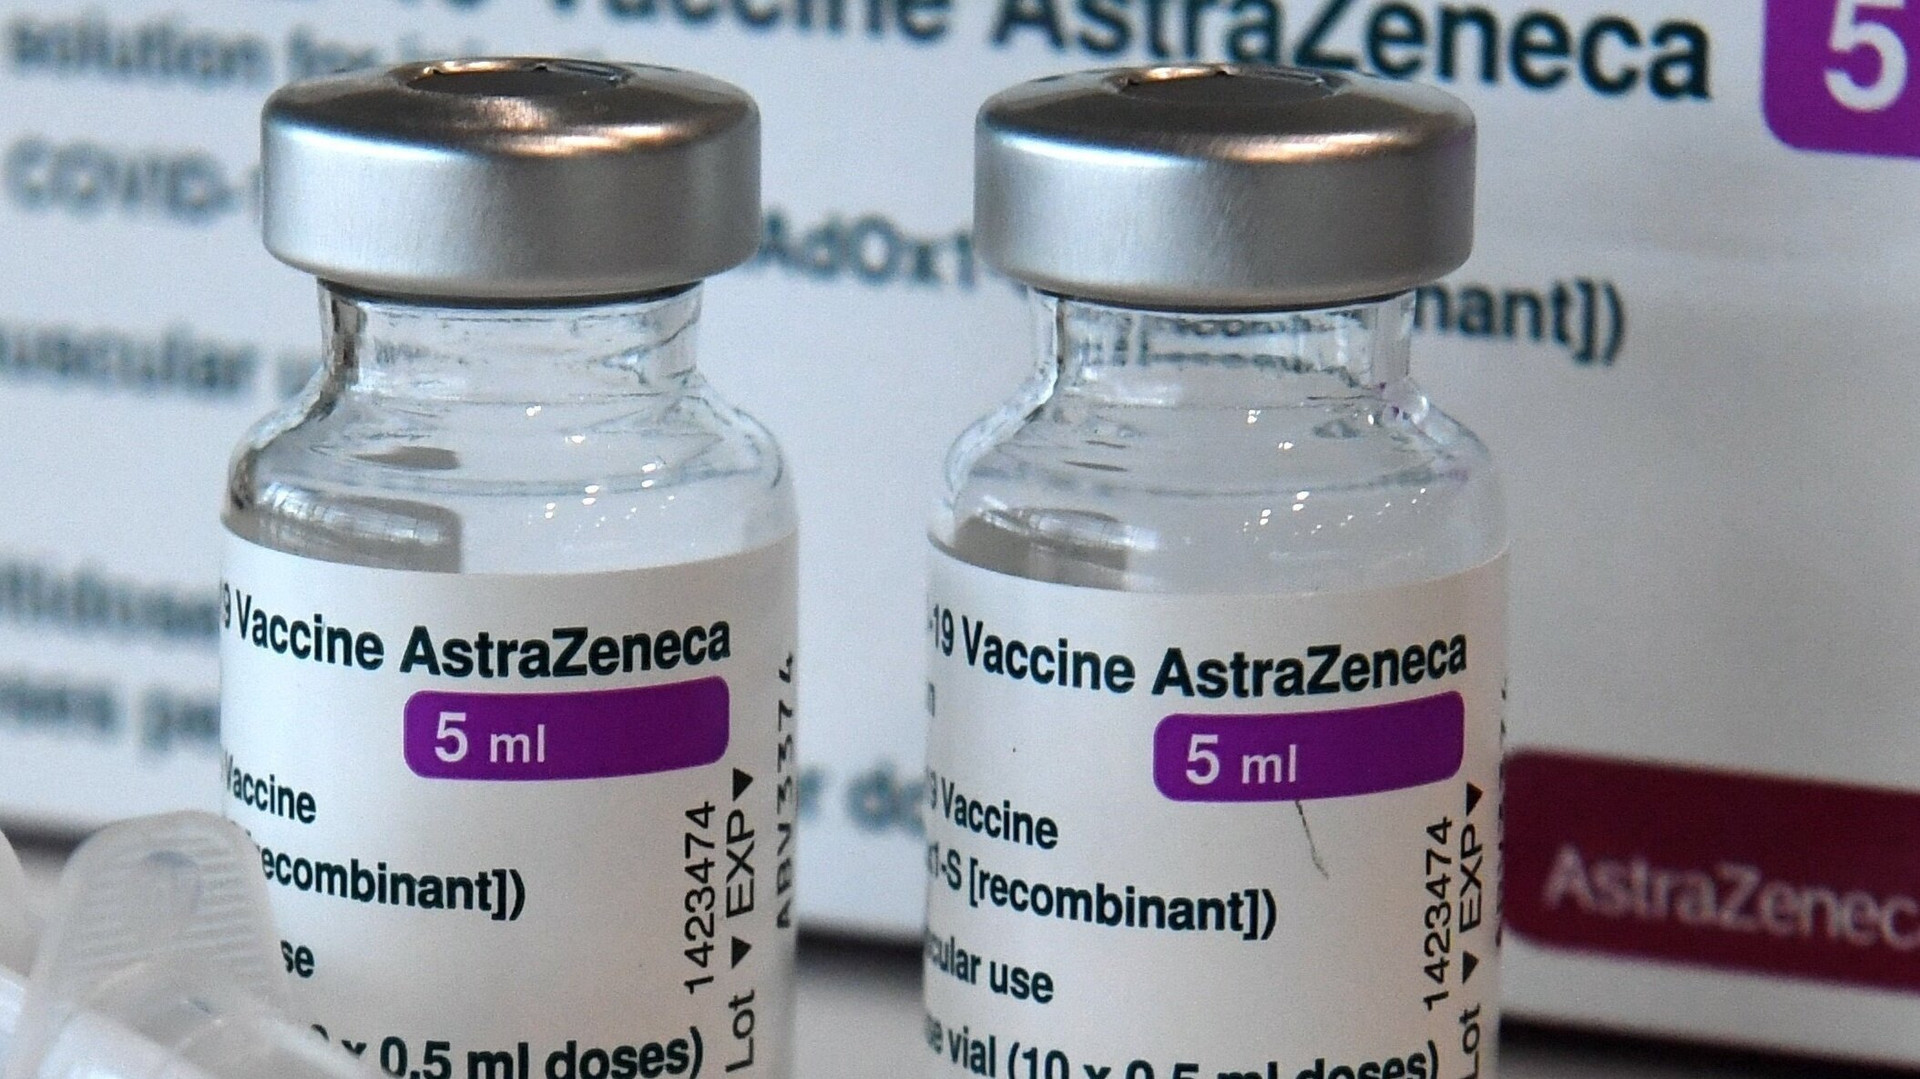 Hãng dược phẩm AstraZeneca lần đầu tiên thừa nhận vaccine COVID-19 của hãng này có thể gây ra tác dụng phụ hiếm gặp có khả năng dẫn đến đông máu, nguy cơ tử vong. (Ảnh: Live Science)